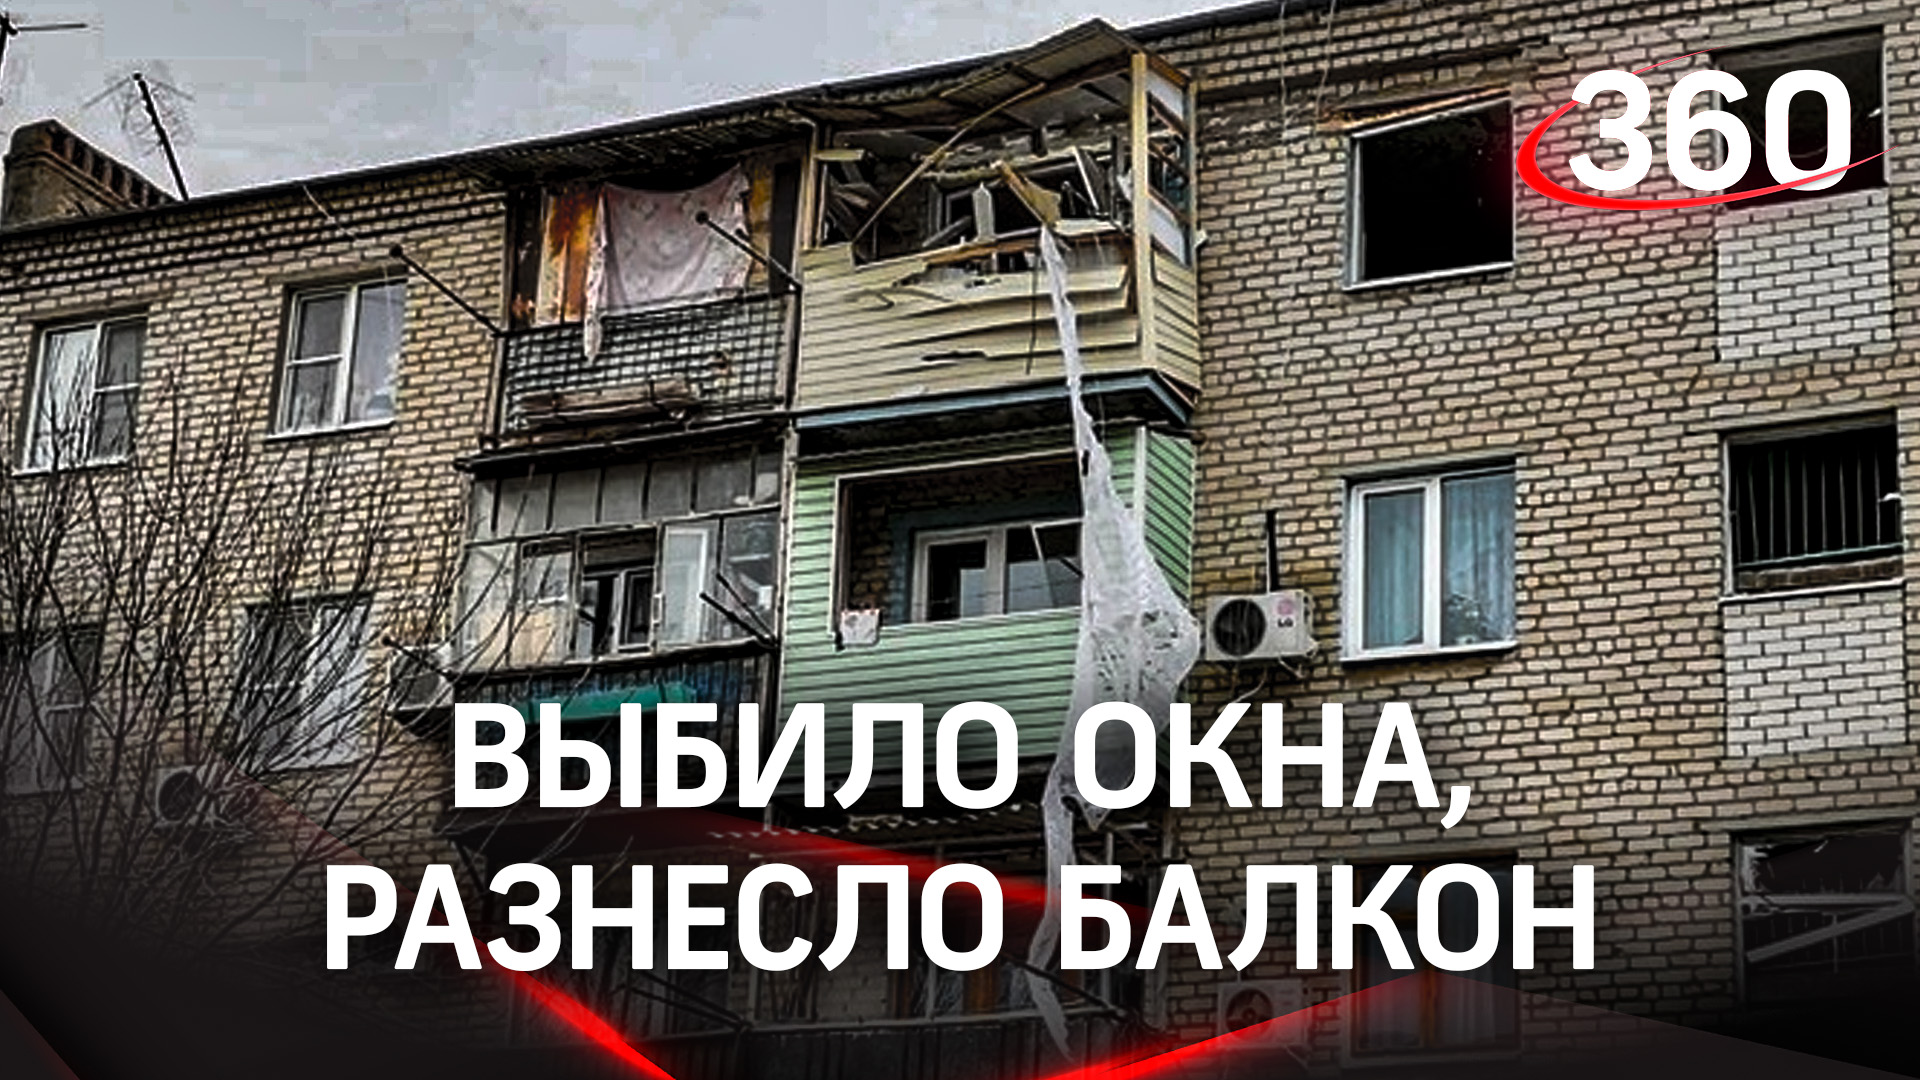 Газ взорвался в пятиэтажке в Астраханской области, есть пострадавший. Кадры из разрушенной квартиры